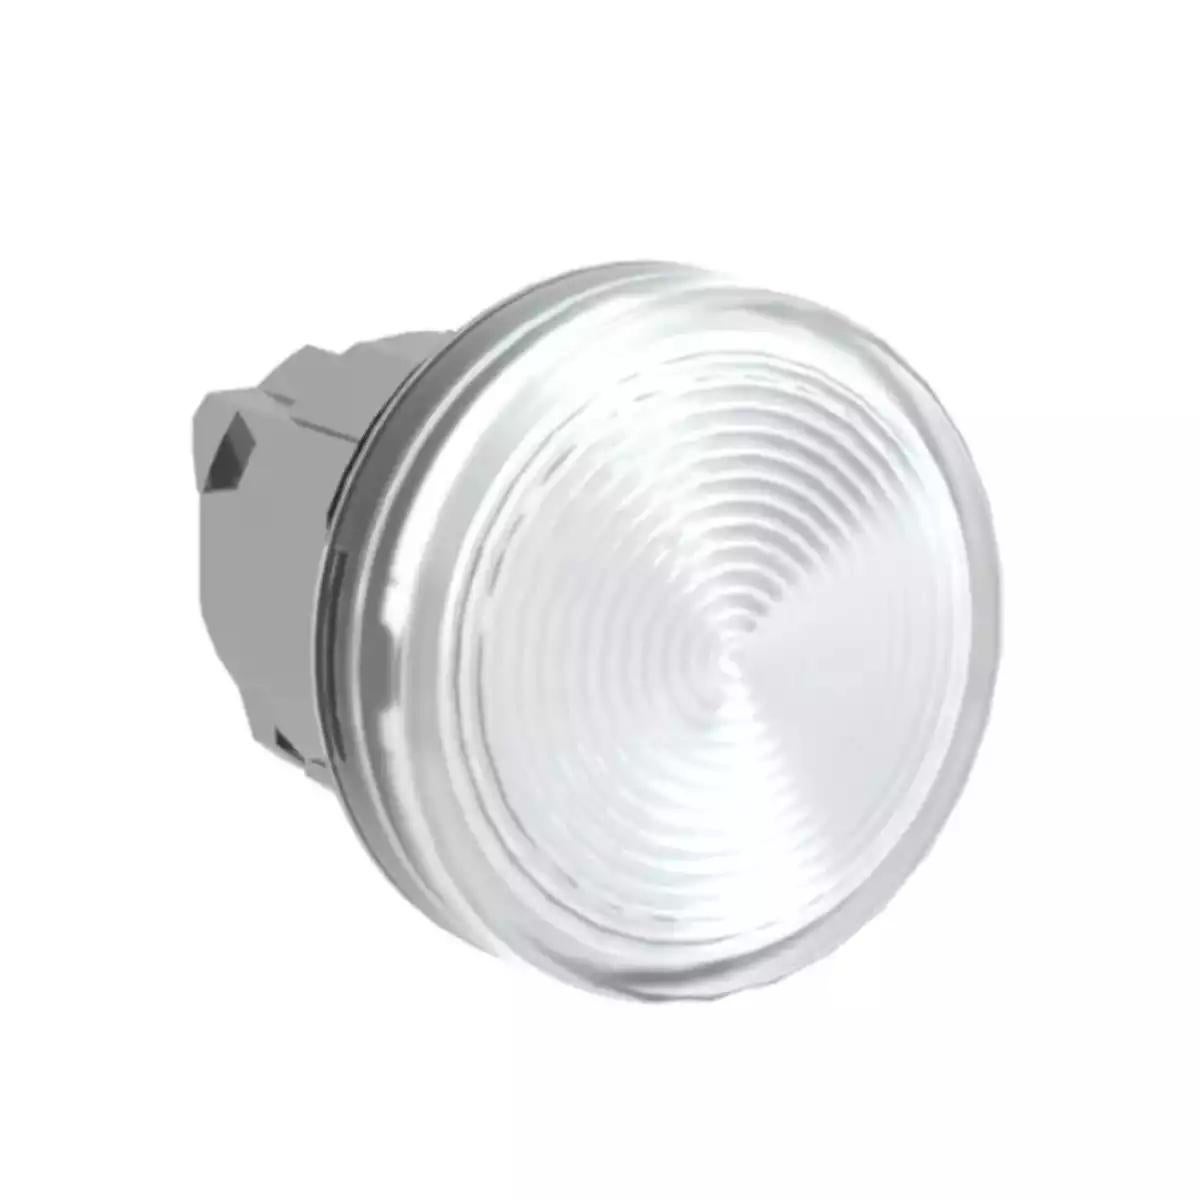 Pilot light head, Harmony XB4, metal, clear, 22mm, plain lens for BA9s bulb